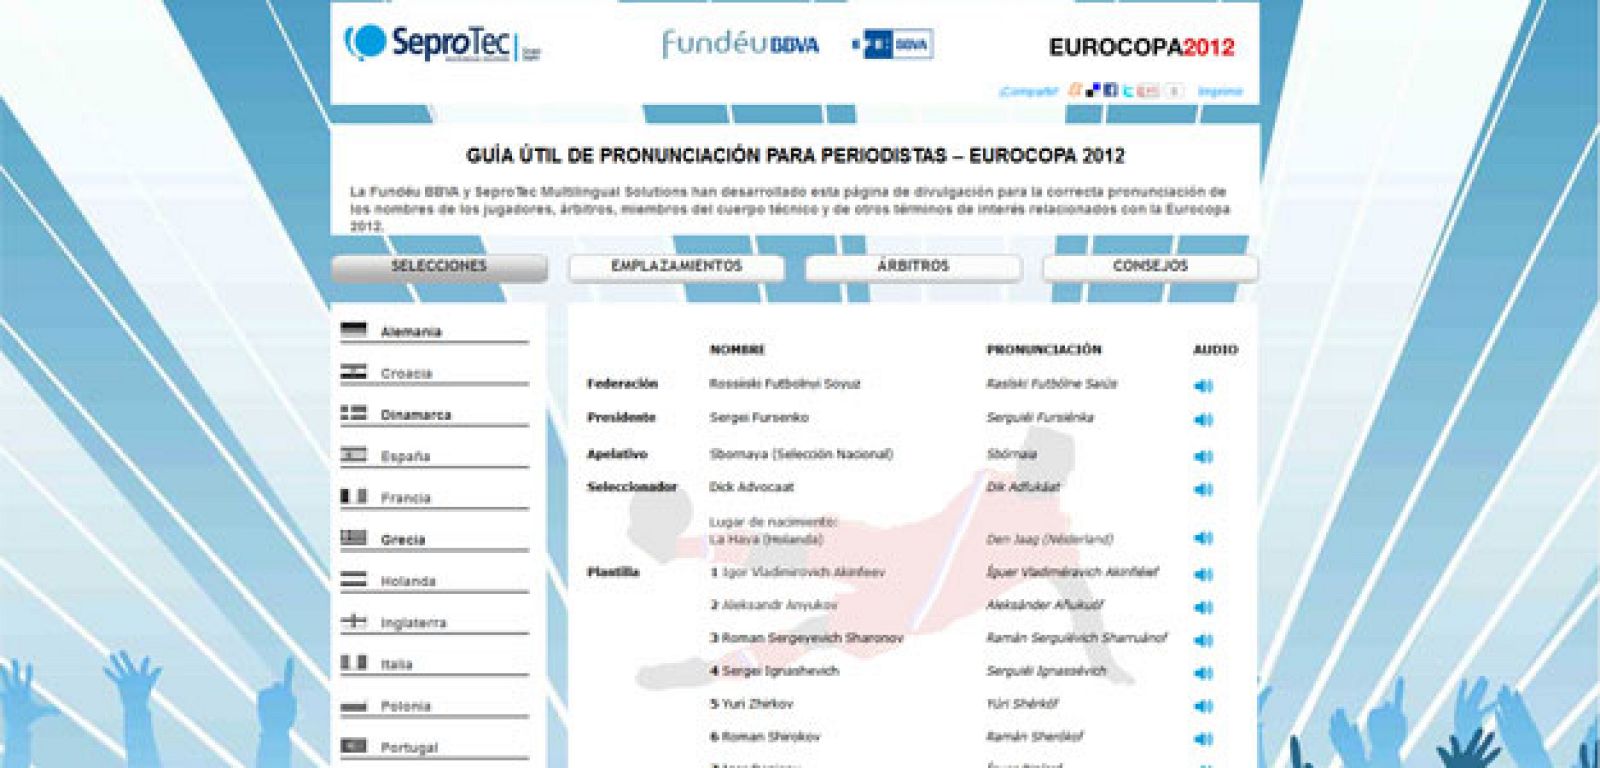 Imagen de la aplicación para la correcta pronunciación de los nombres de la Euro 2012 de la Fundéu.